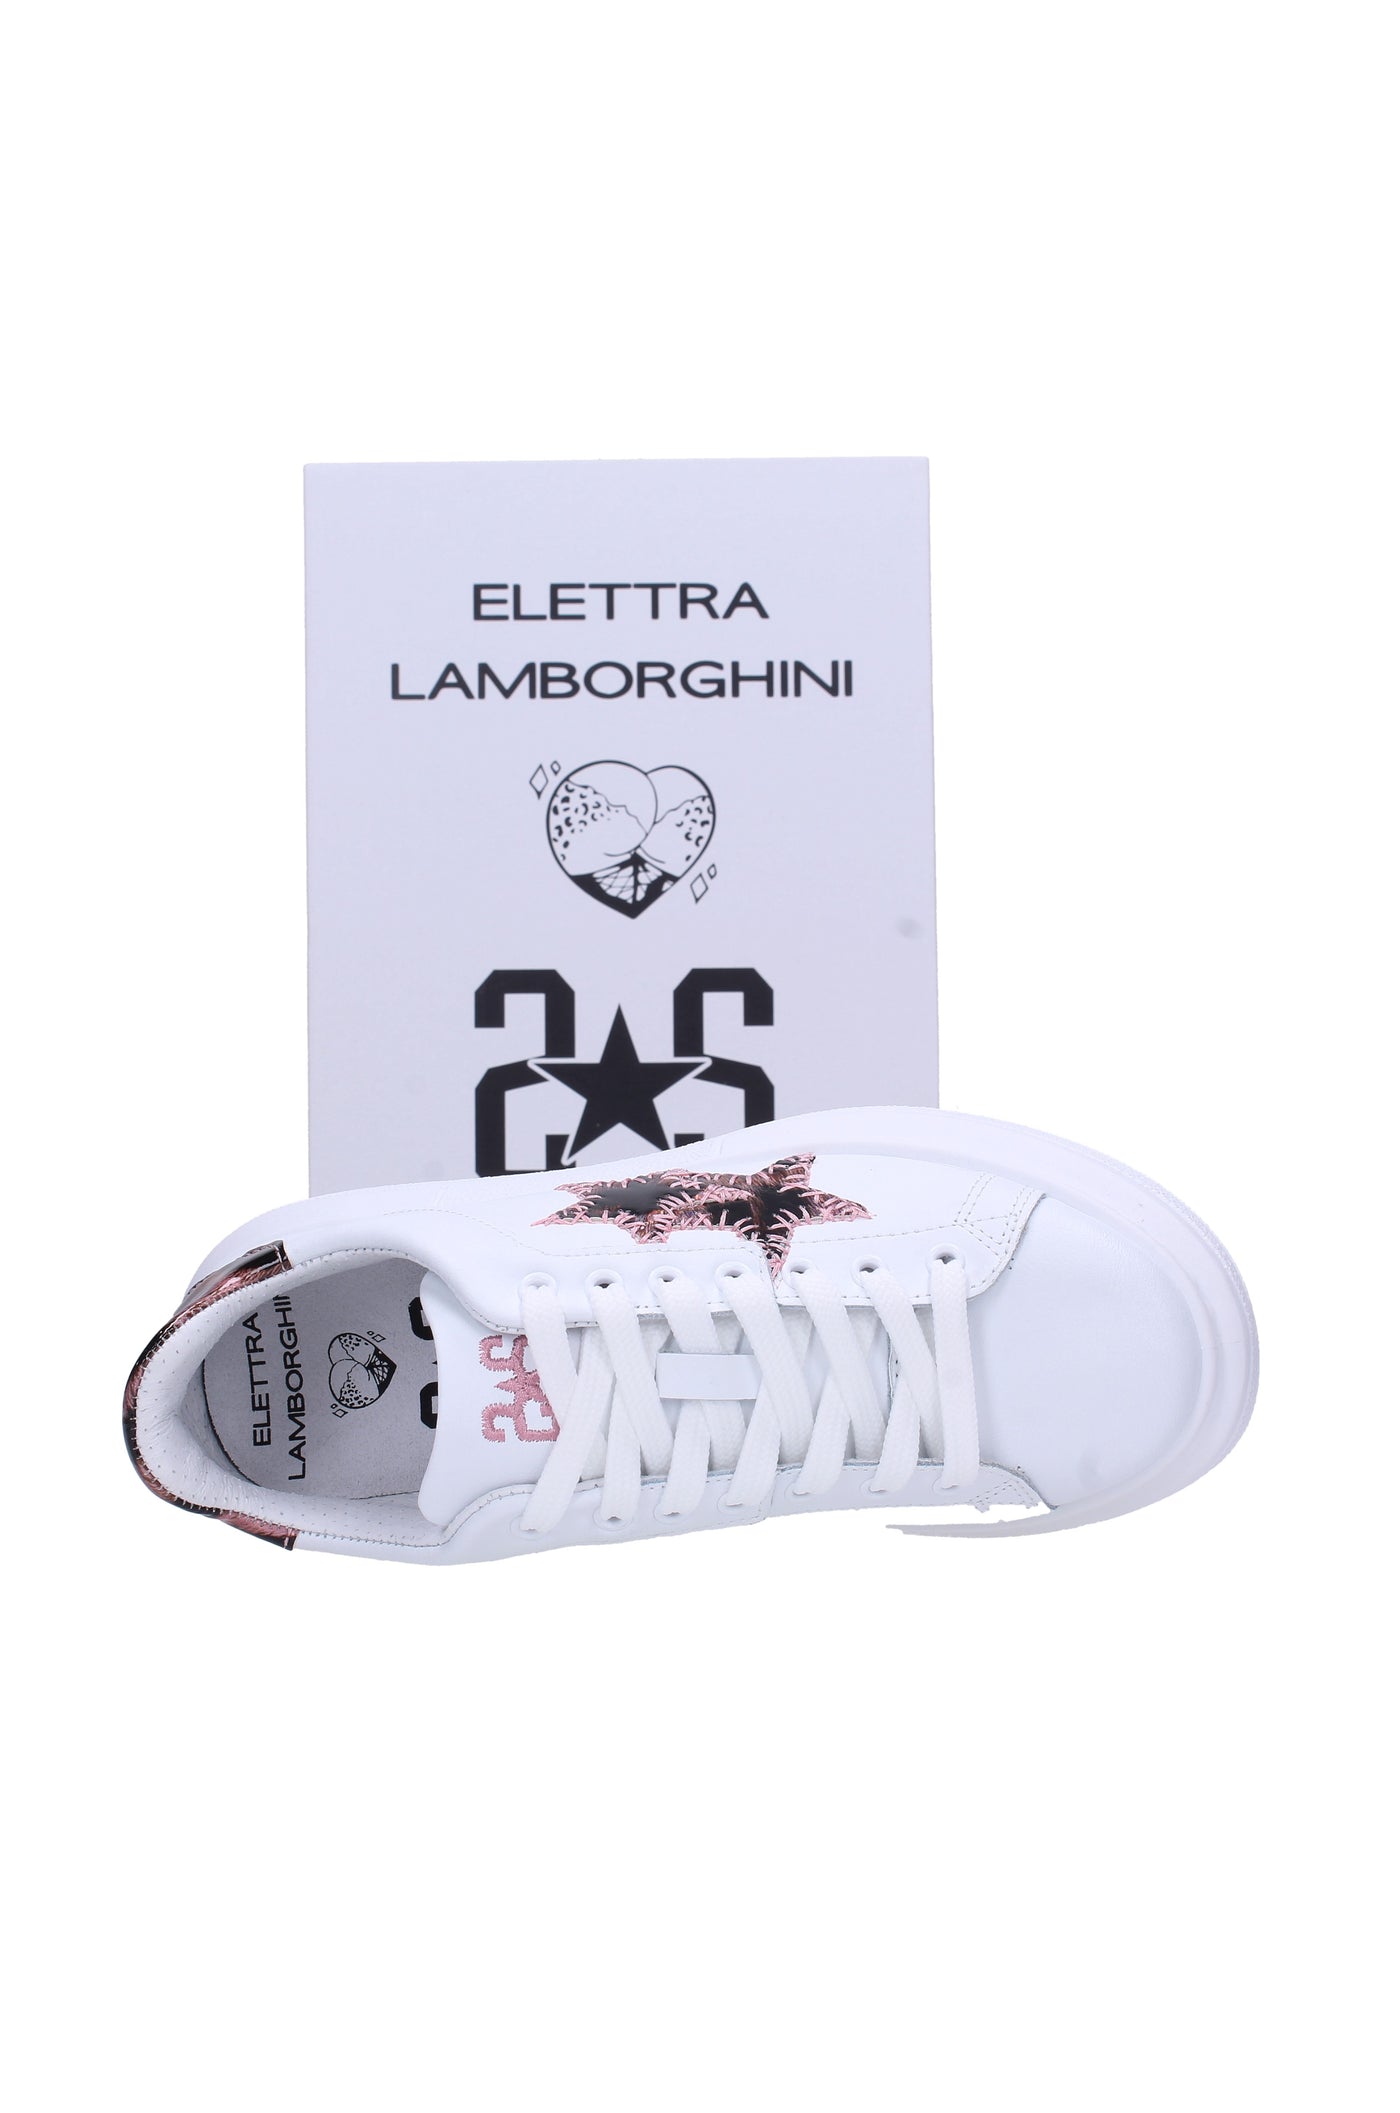 2 star by elettra lamborghini Sneakers#colore_bianca-rosa